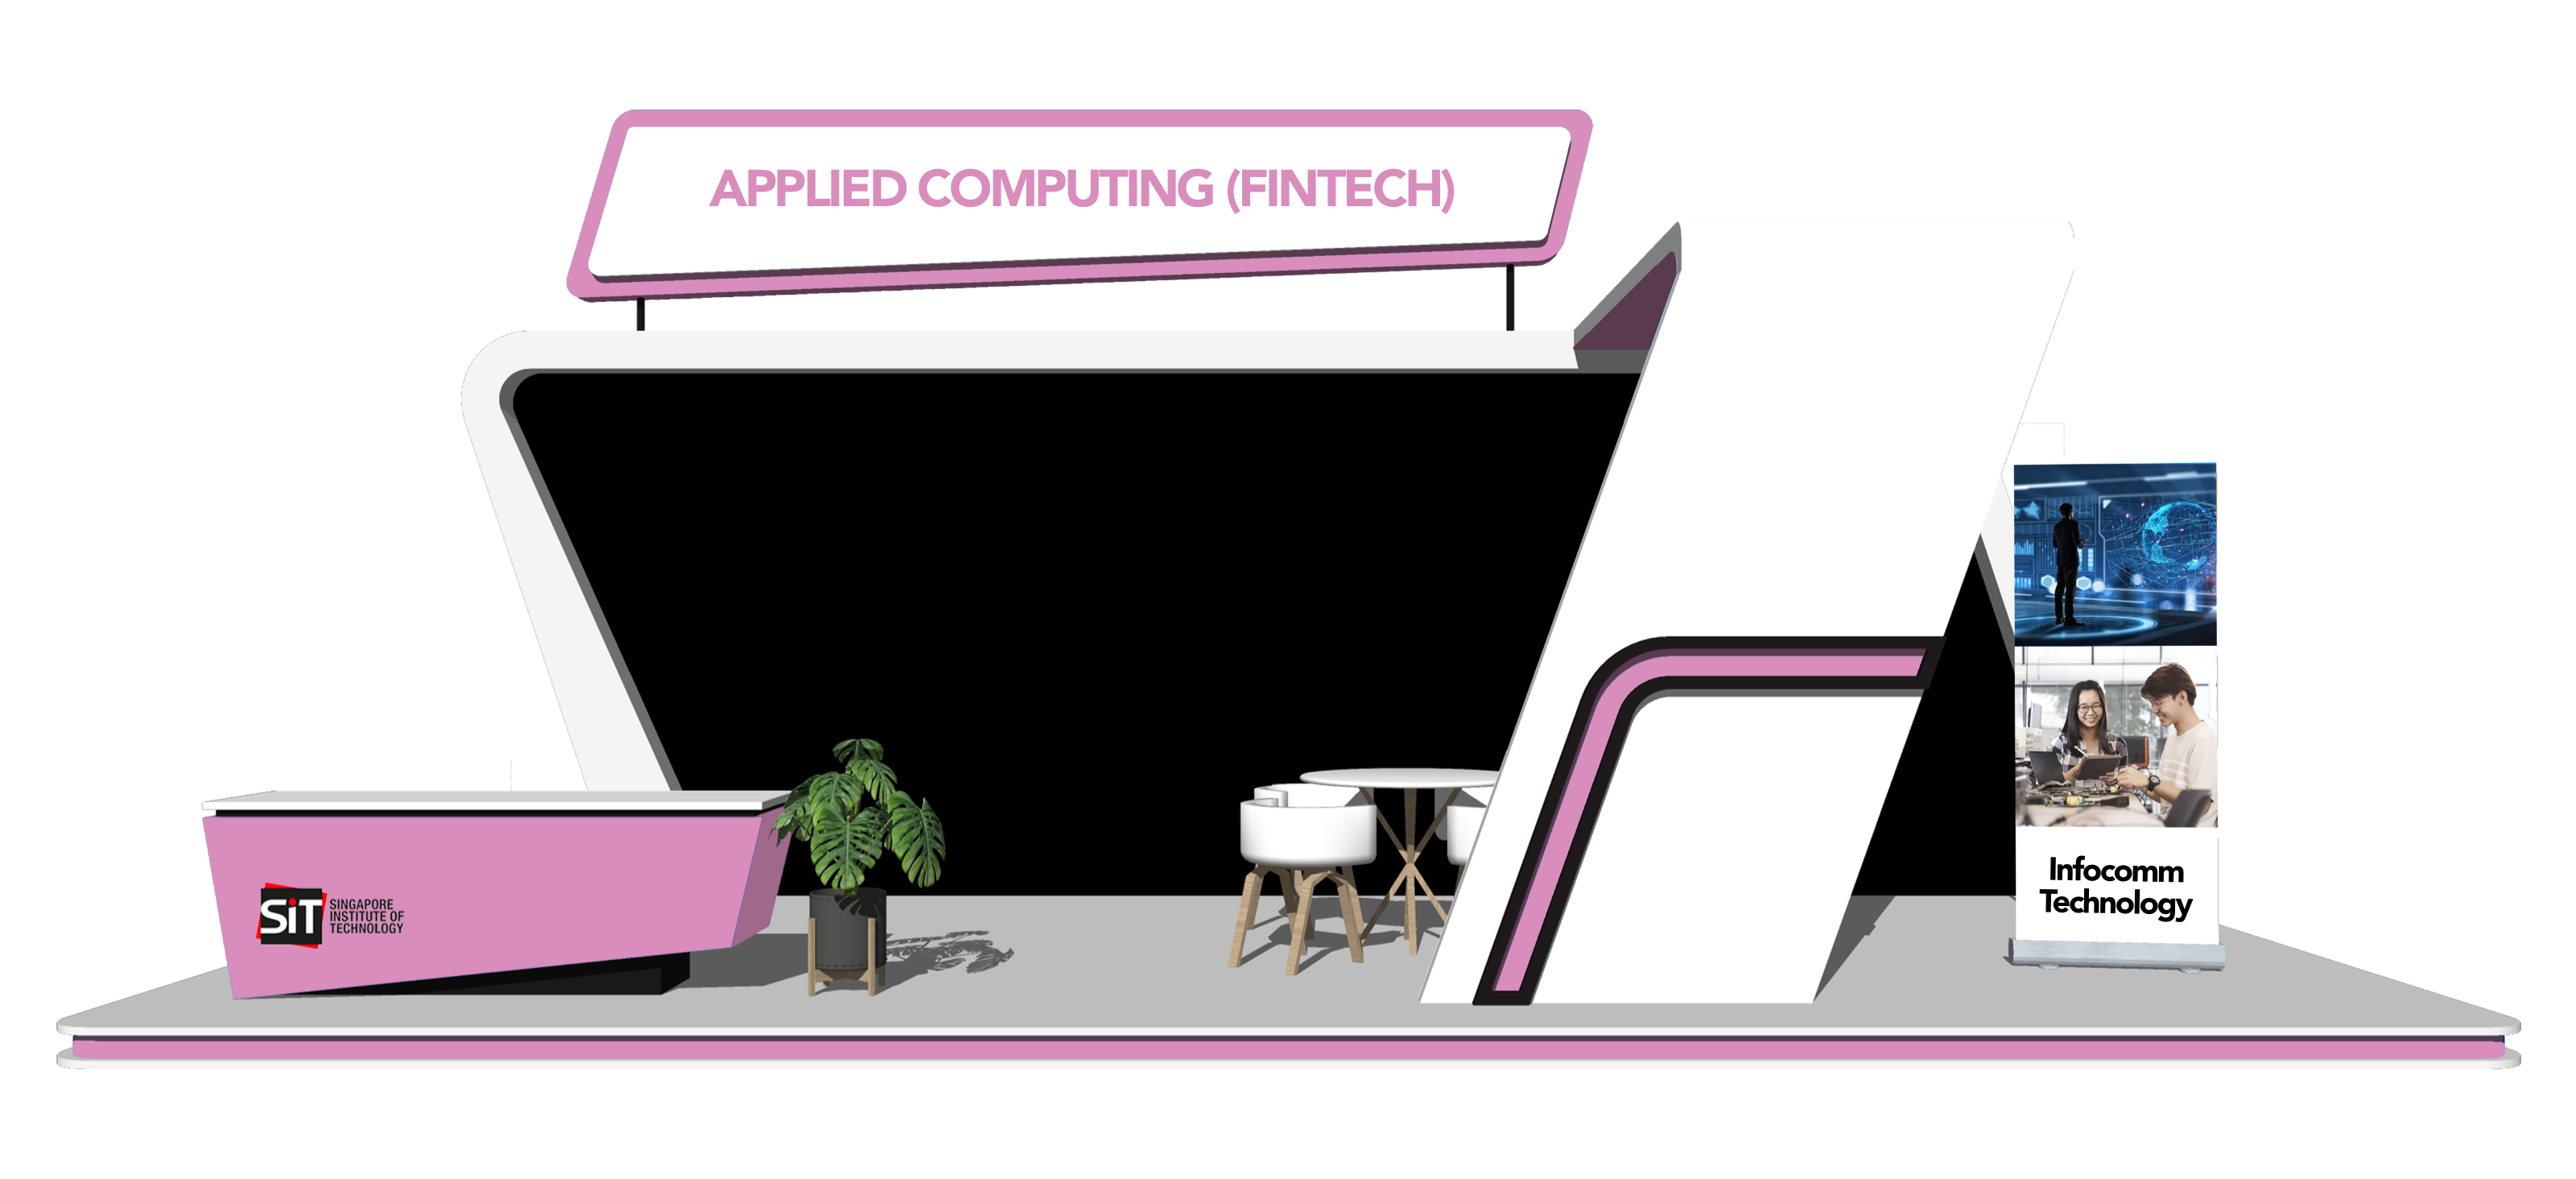 Applied Computing (Fintech)